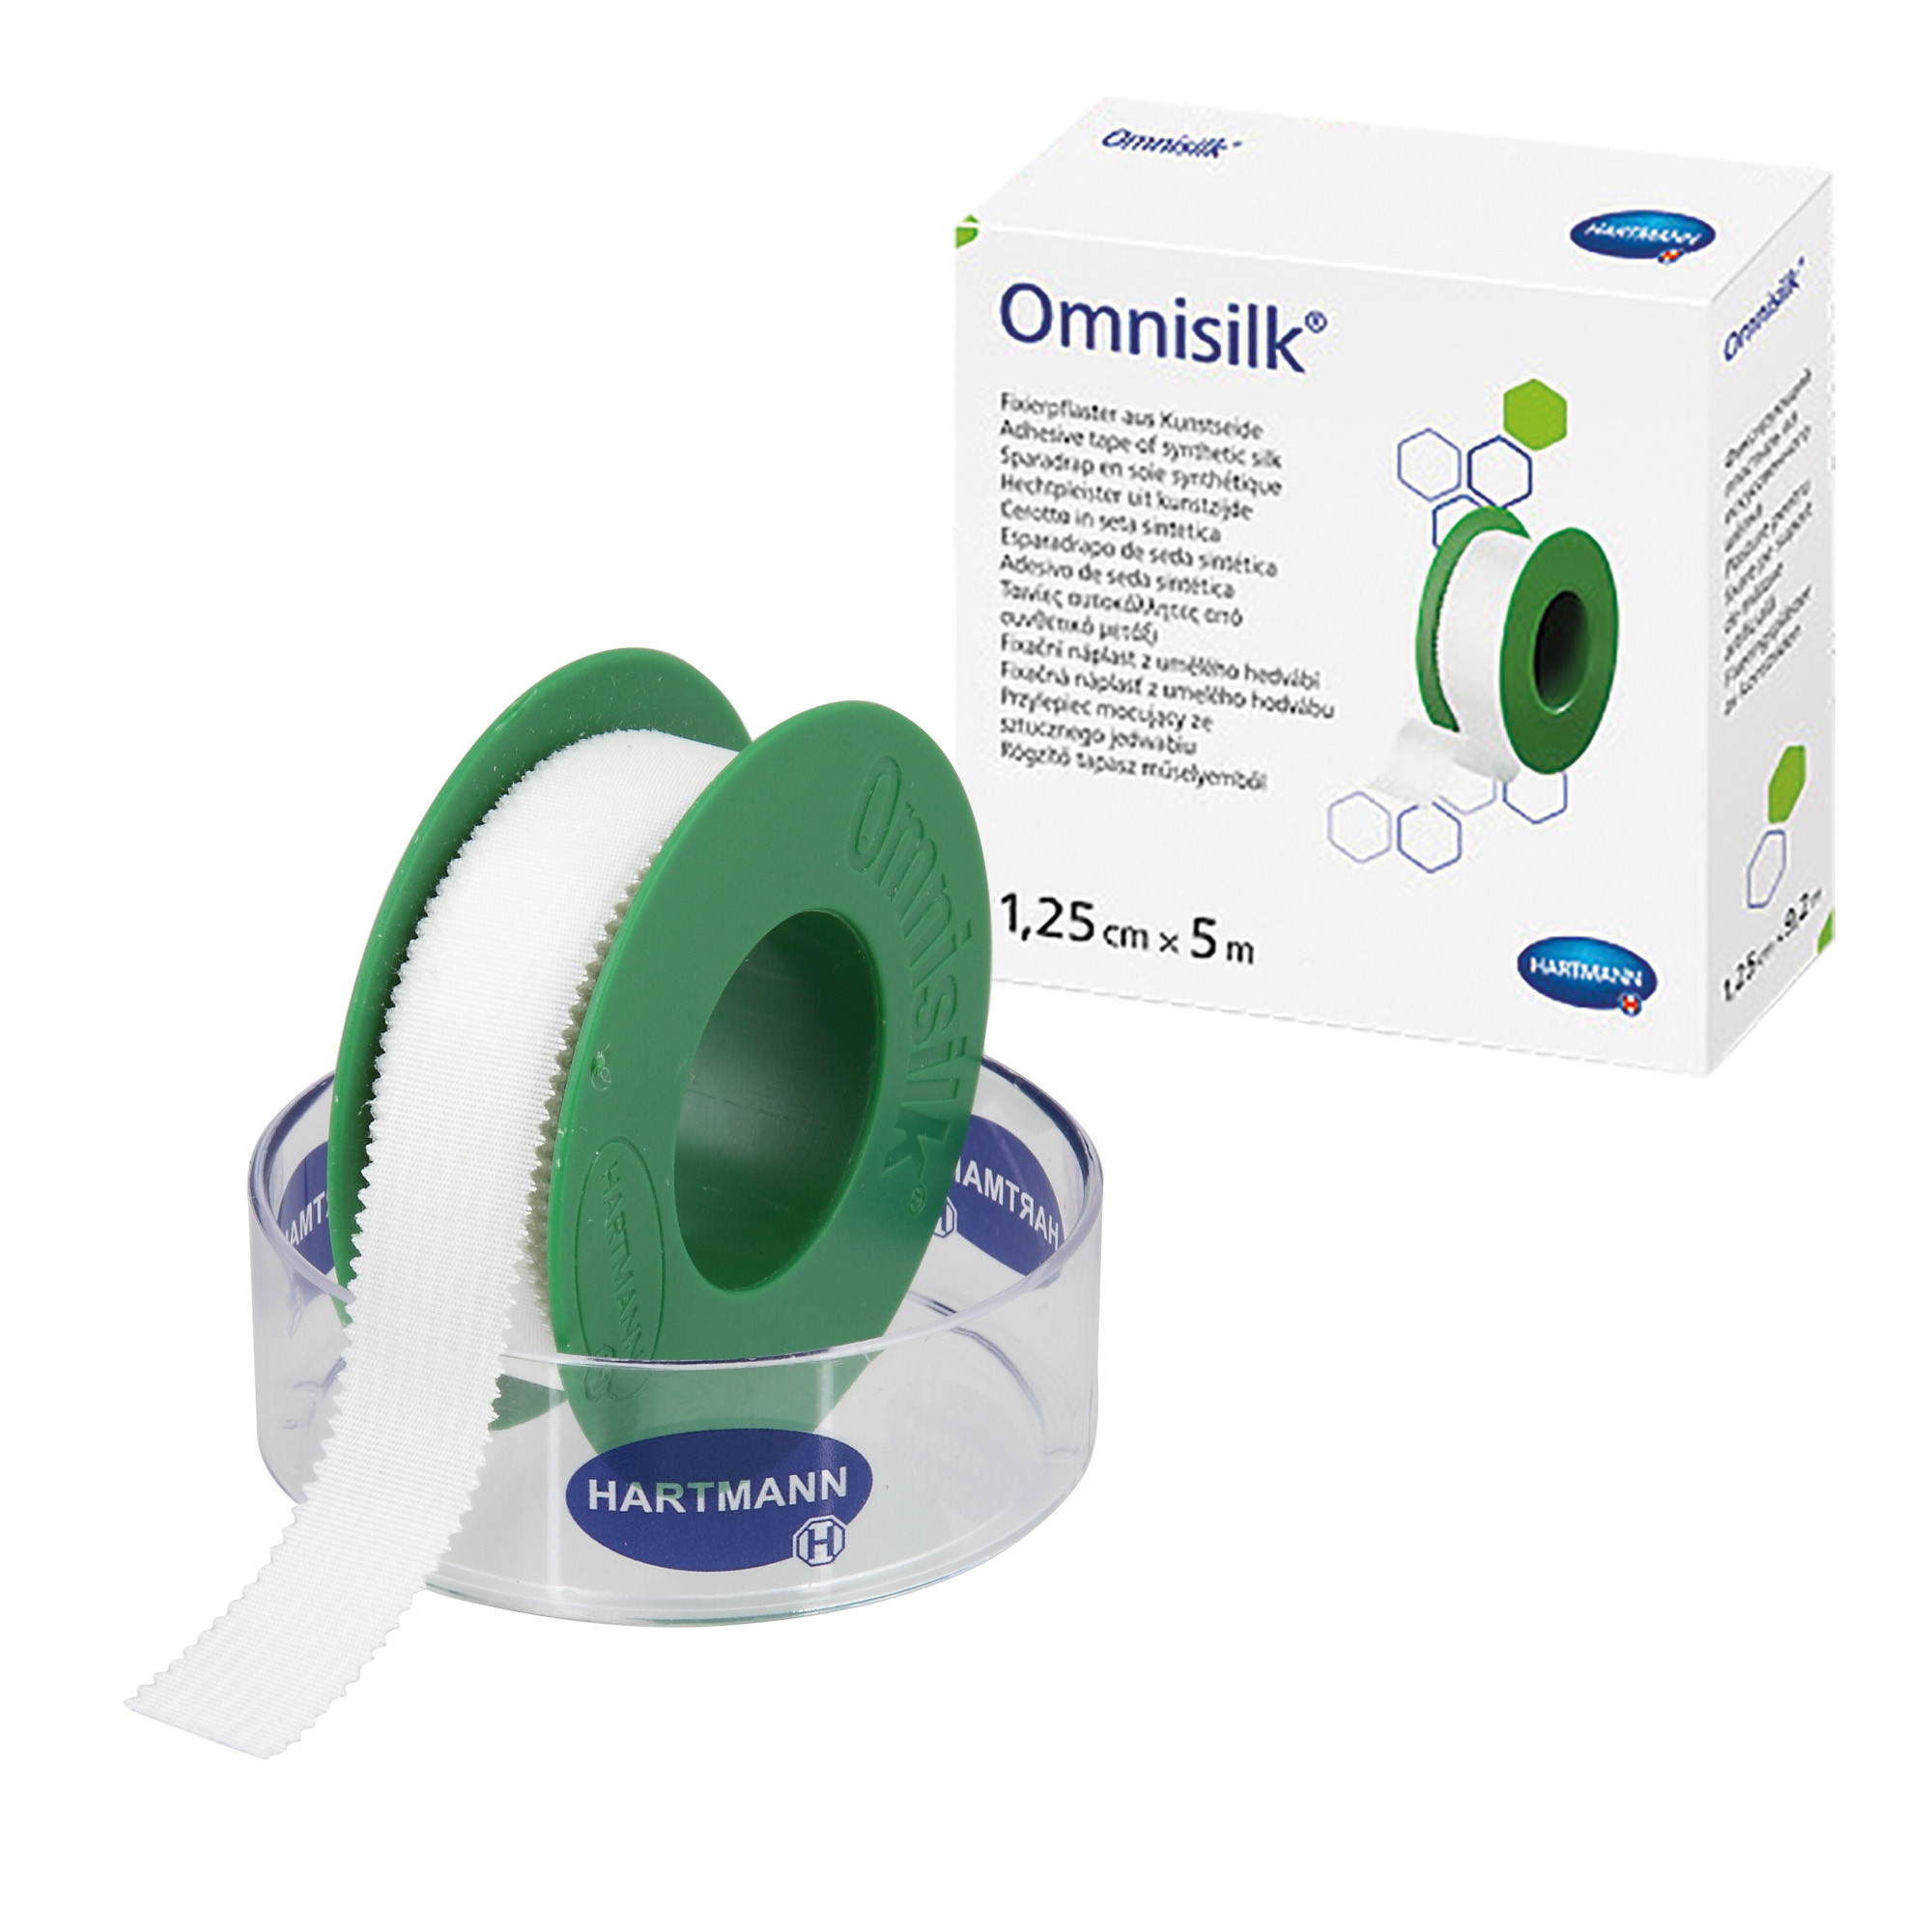 Omnisilk - Sparadrap de soie synthétique 5 m x 1,25 cm 1 pc